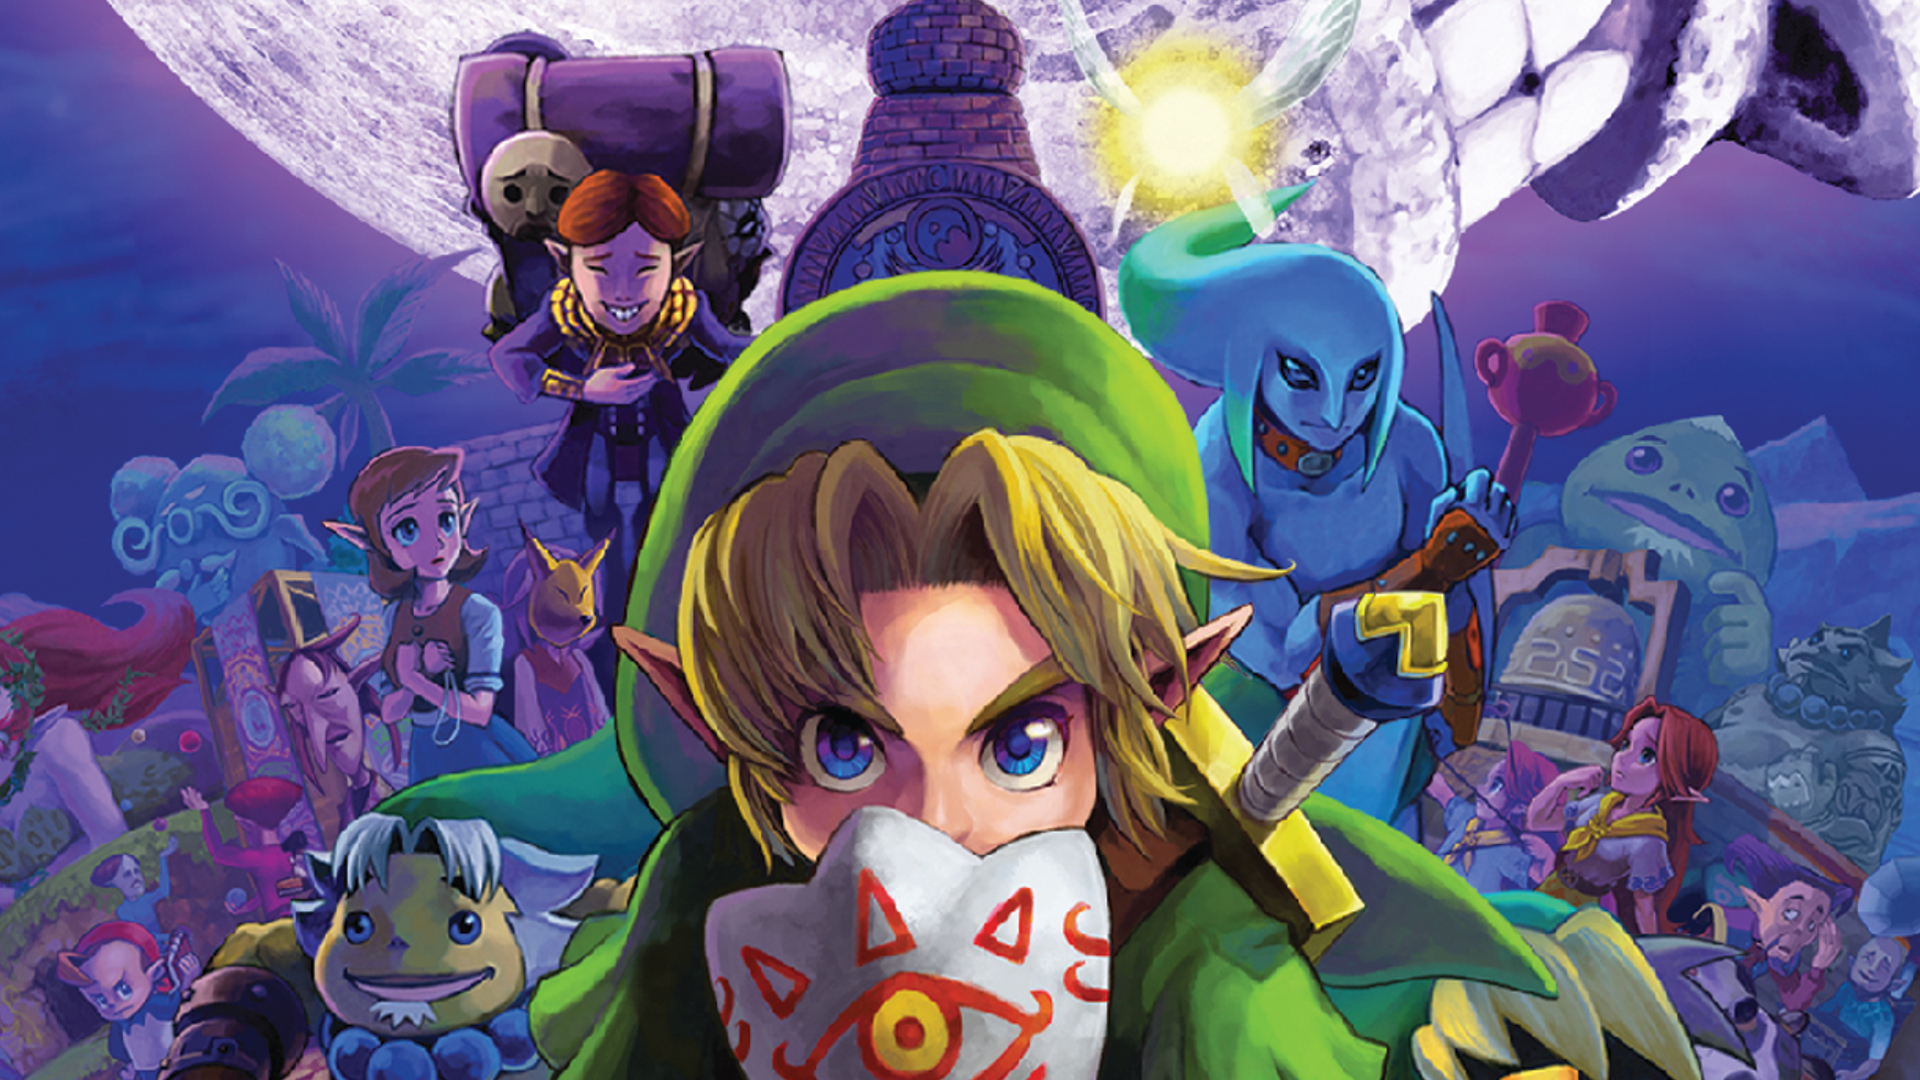 Best 3DS games - The Legend of Zelda: Majora's Mask 3D